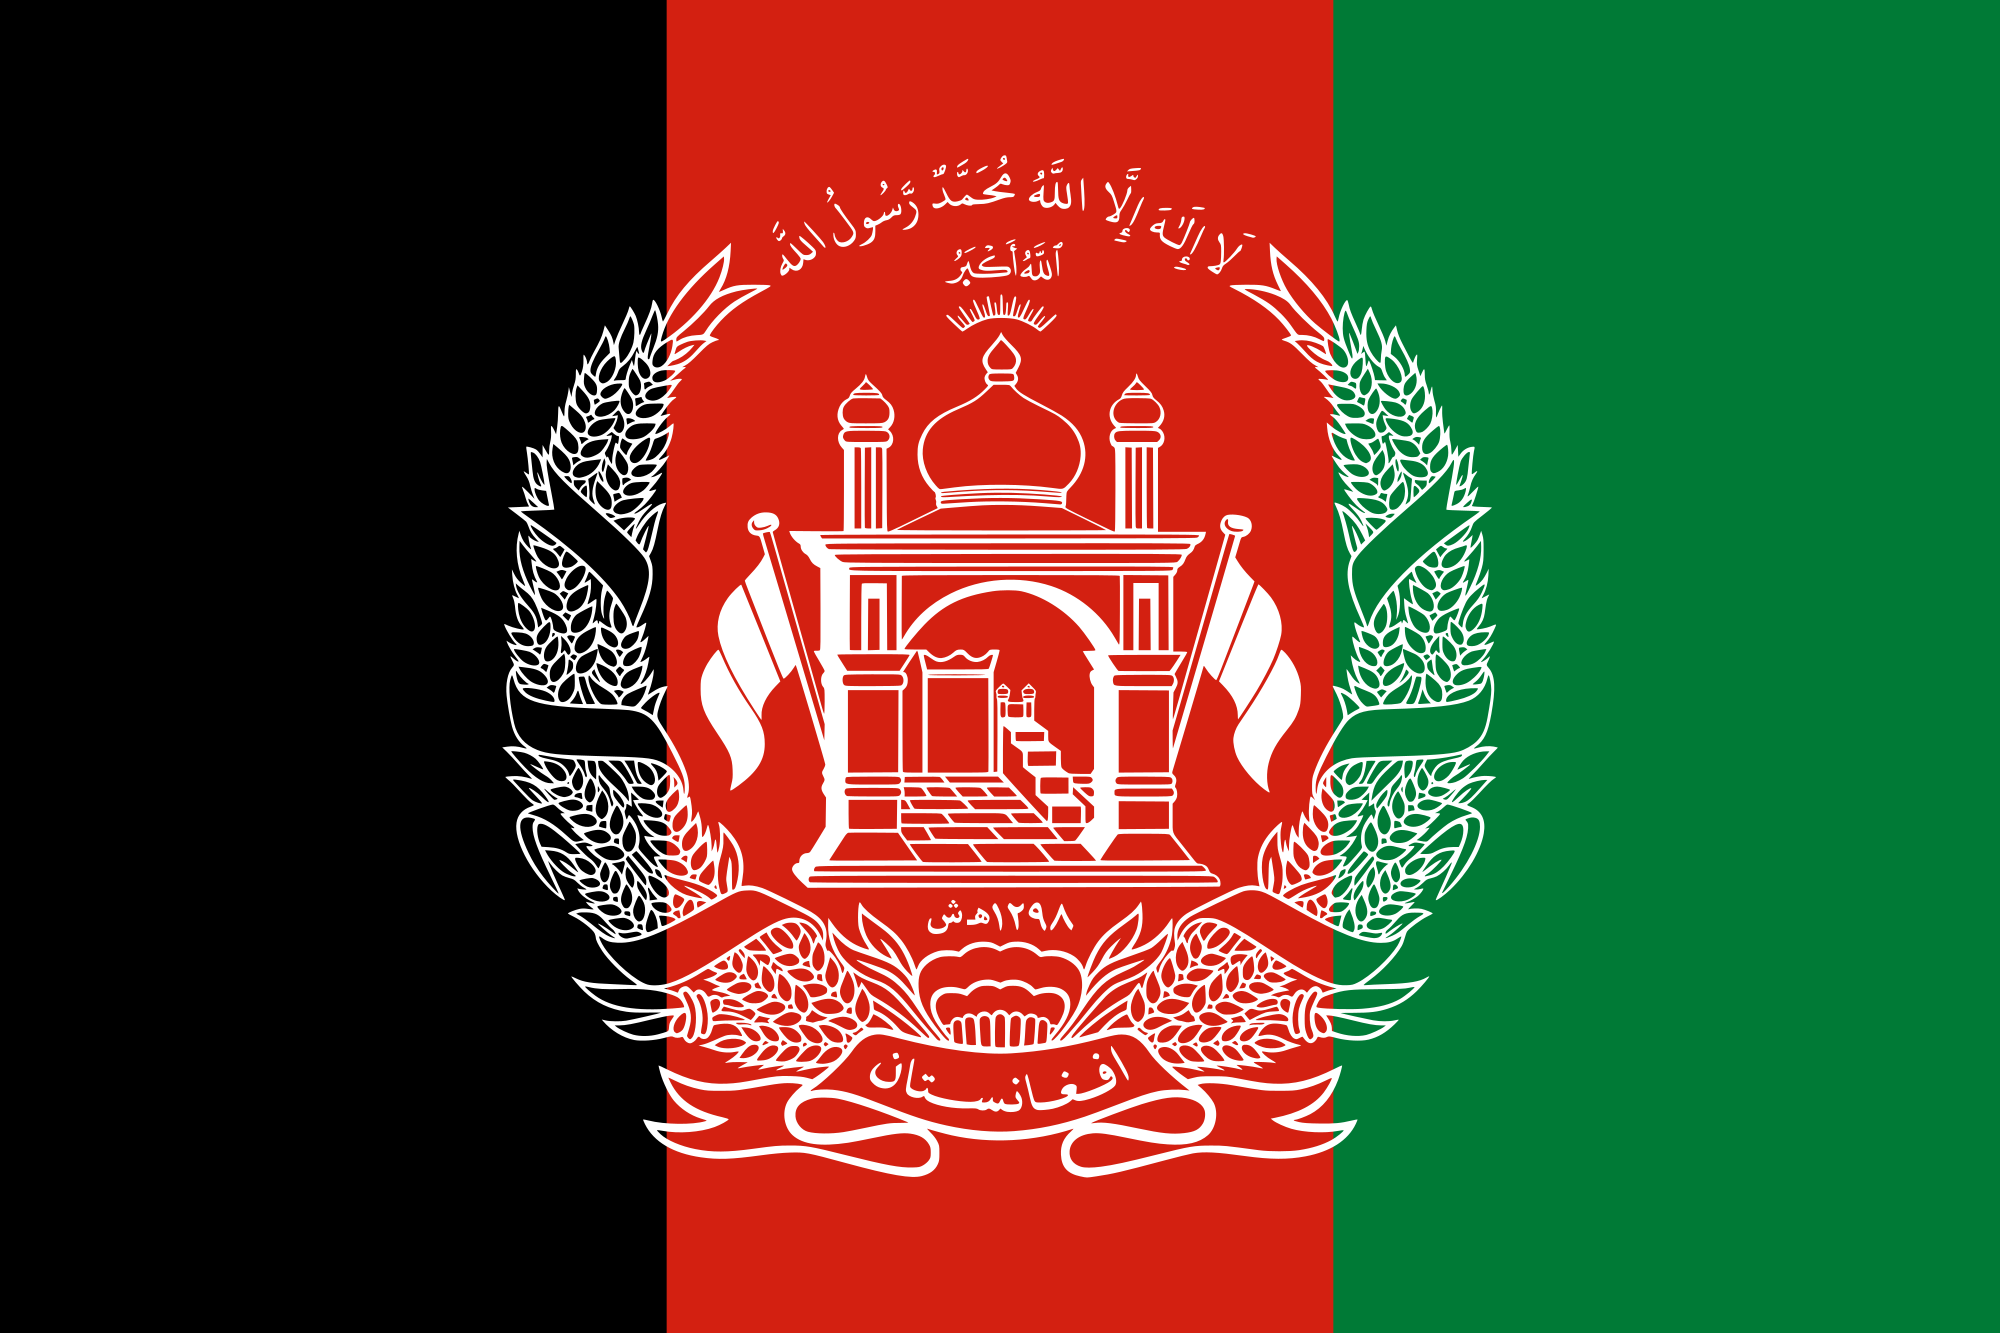 Afghanistan_flag